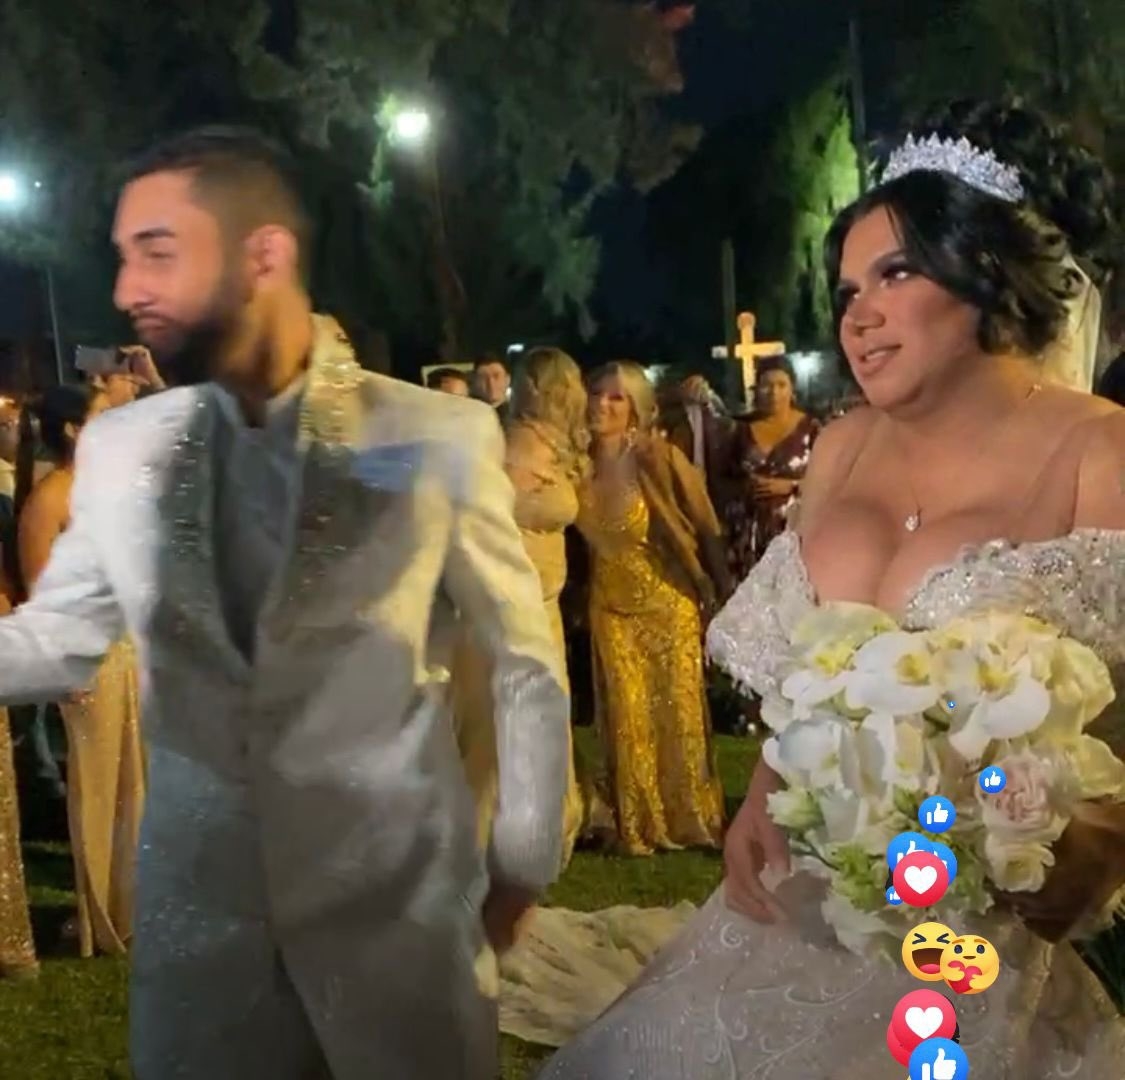 Kimberly "La más preciosa" celebra su boda con Óscar en León